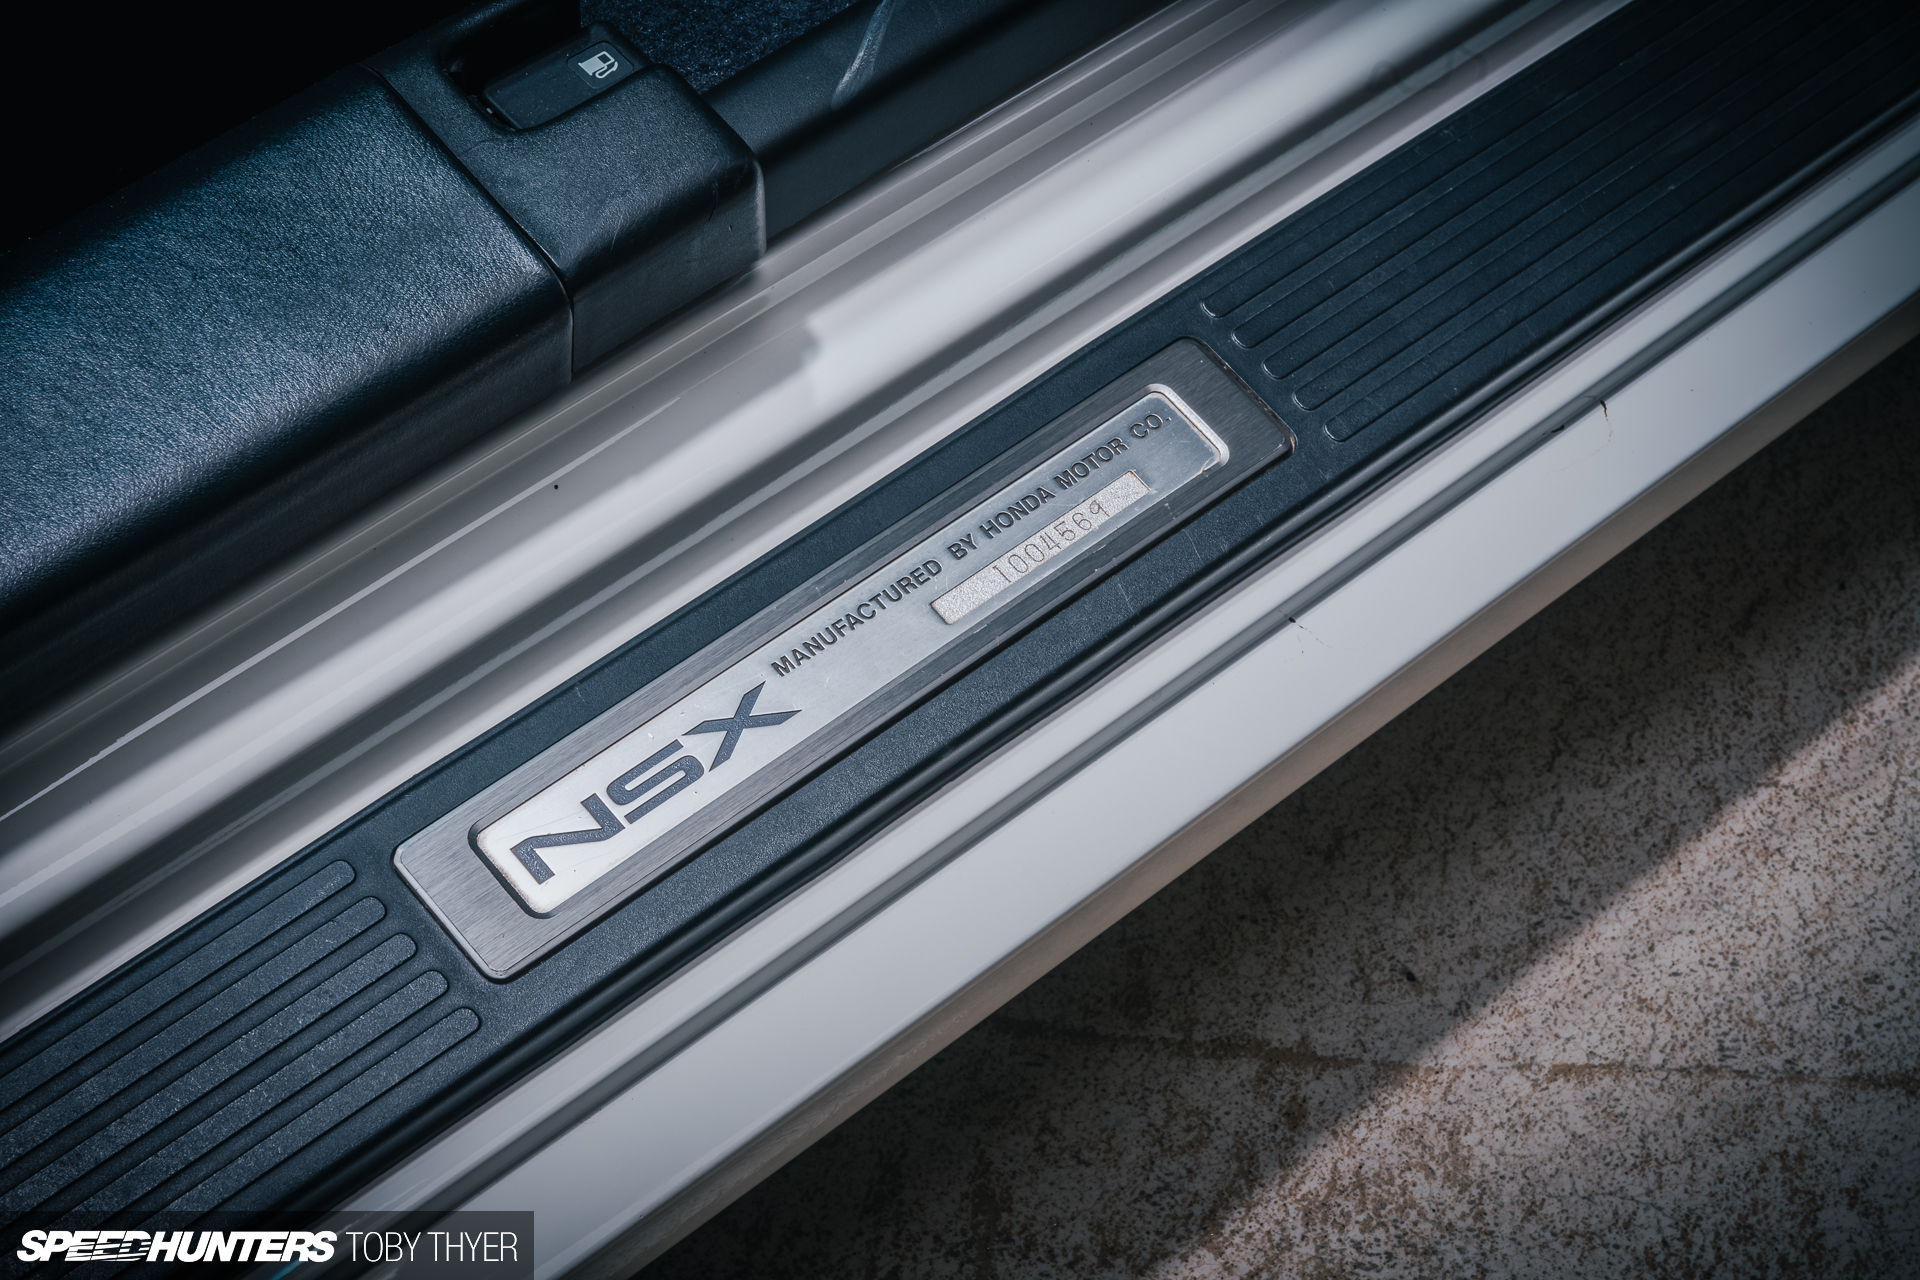 Honda (Acura) NSX by Toby Thyer (SpeedHunters)